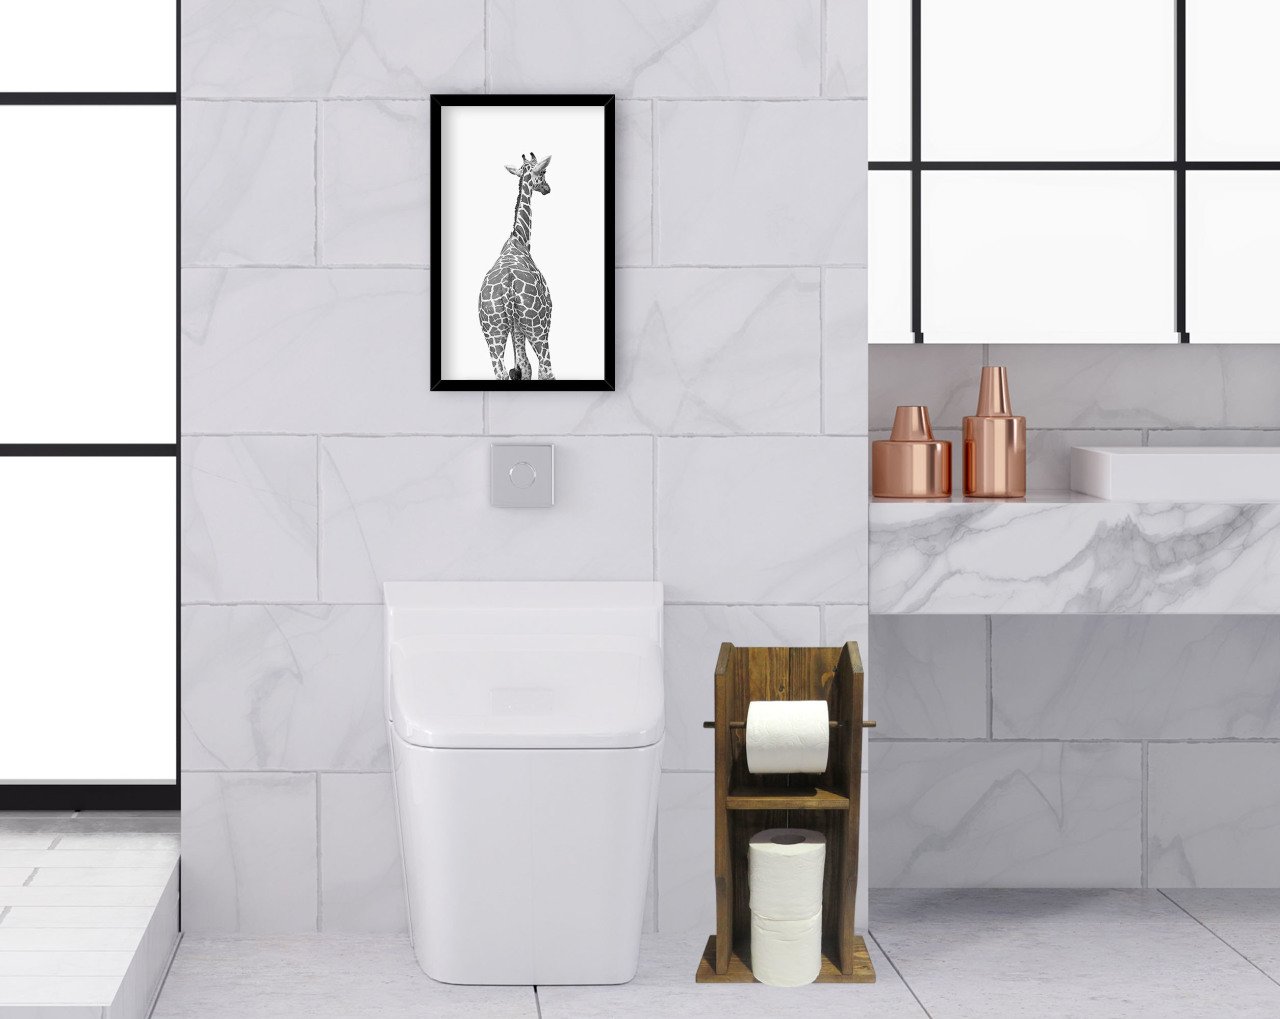 BK Home Doğal Masif Ahşap Tuvalet Kağıtlığı ve Dekoratif Ahşap Siyah Çerçeveli Tablo Seti-10